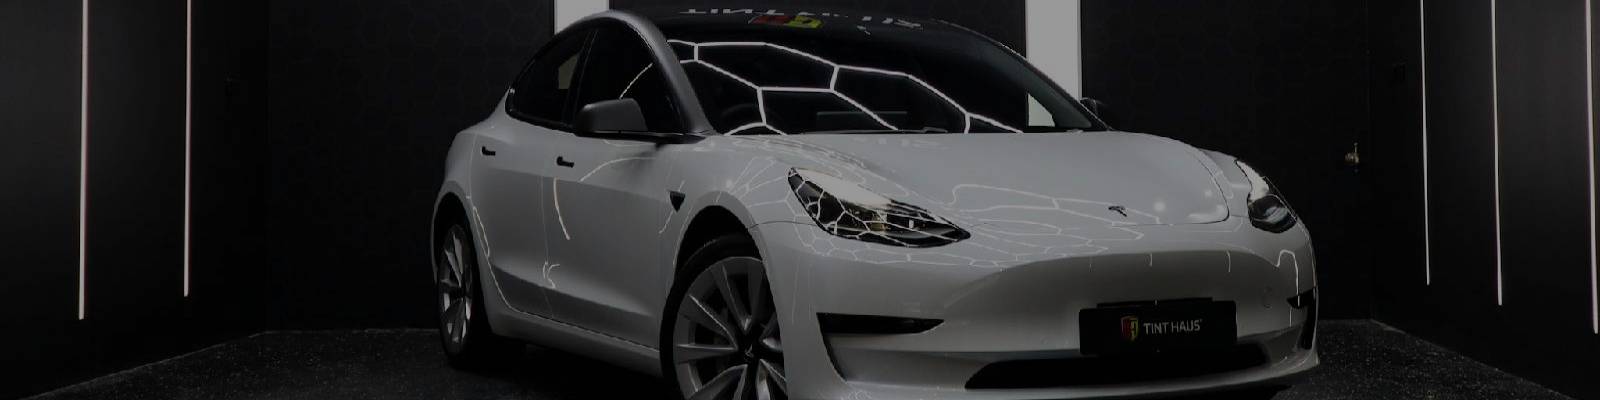 Tesla Model 3 window tinting, Tesla Paint Protection